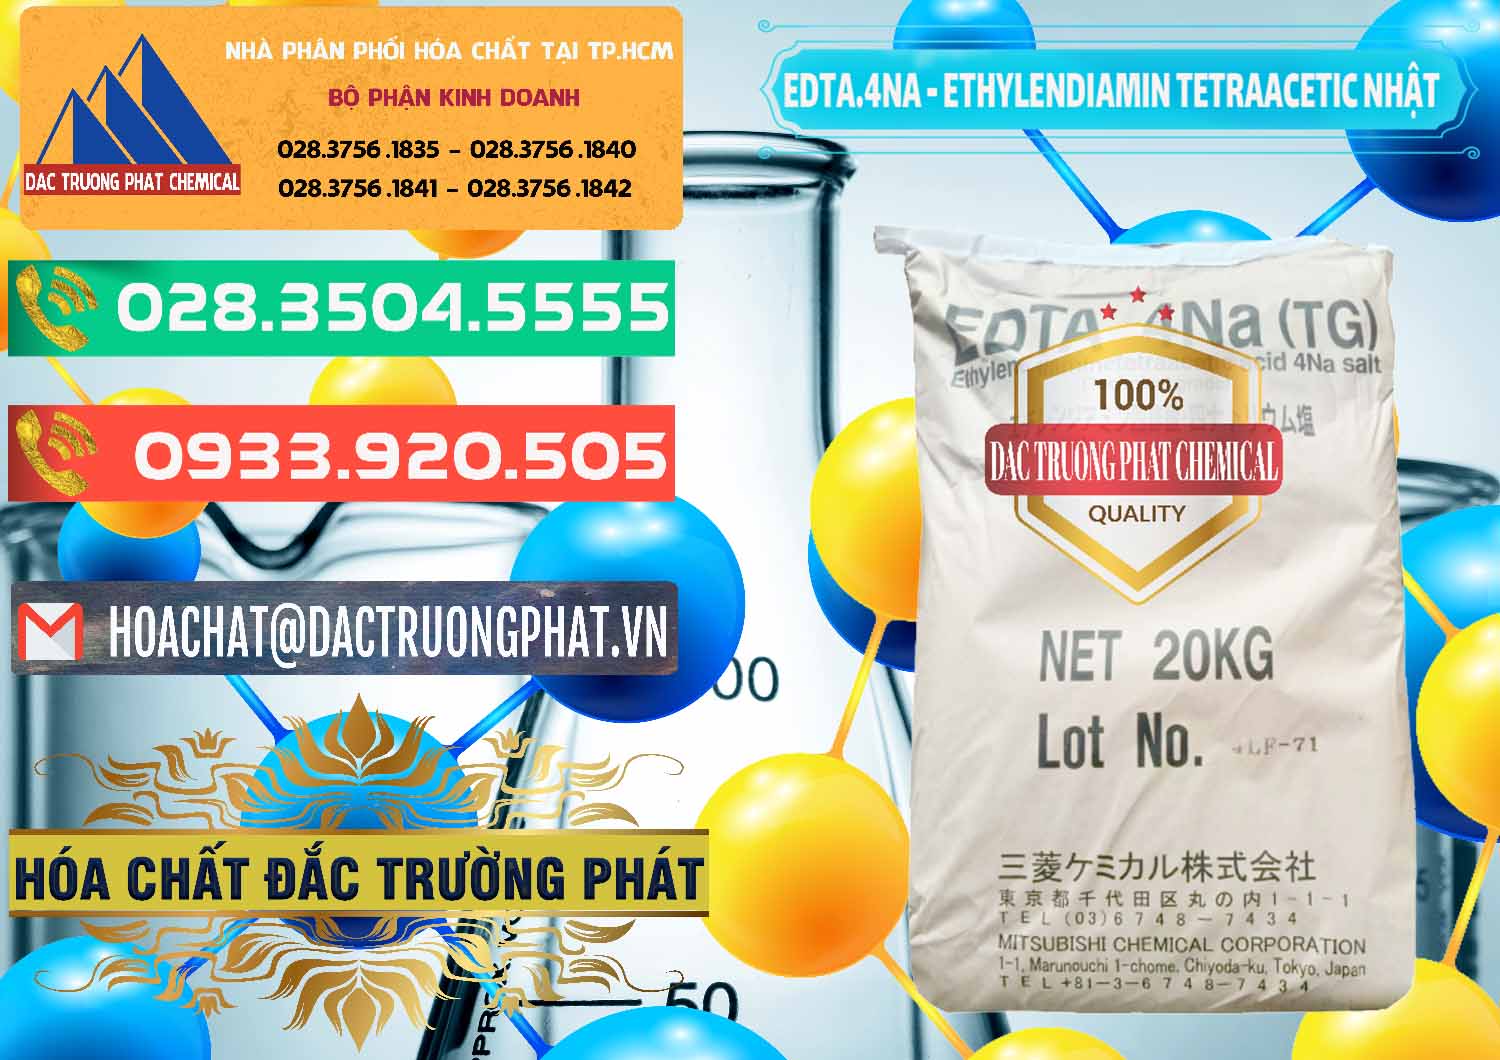 Cty chuyên bán & cung cấp EDTA 4Na - Ethylendiamin Tetraacetic Nhật Bản Japan - 0482 - Nơi chuyên nhập khẩu ( phân phối ) hóa chất tại TP.HCM - congtyhoachat.com.vn